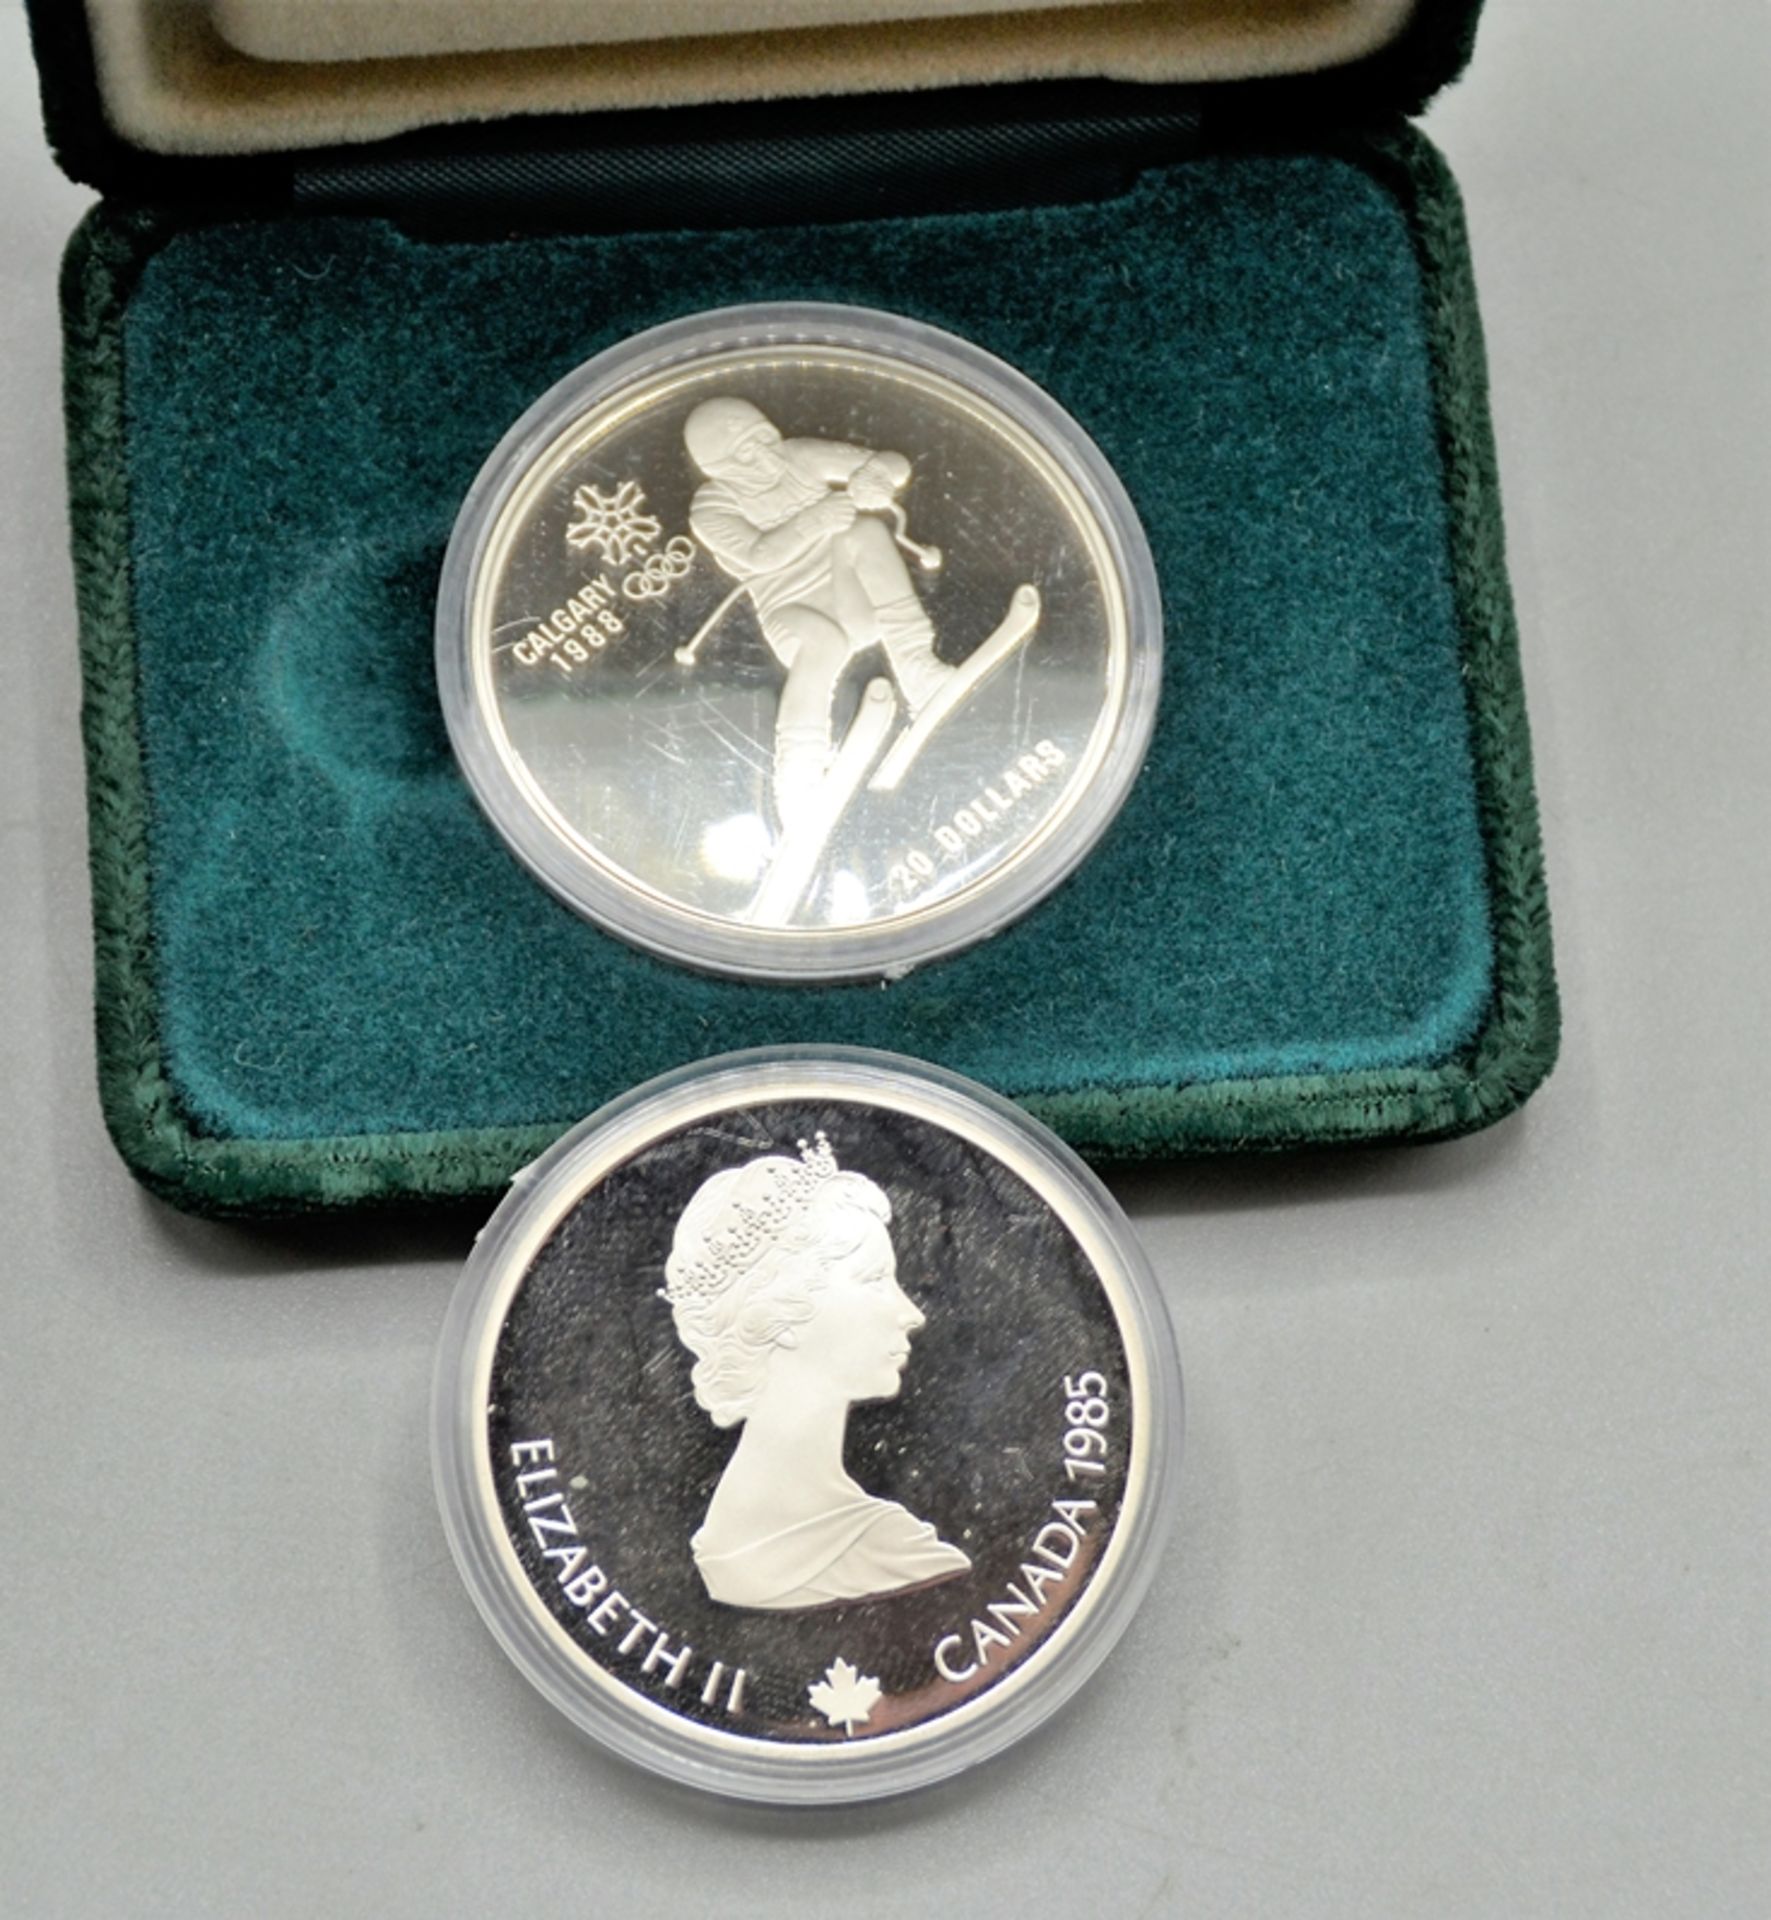 Münzen u. Medaillen Sammlung, darunter 2 x 20 Dollars Canada 1985 Calgary 1988 Silber, Kennedy Half - Bild 3 aus 3